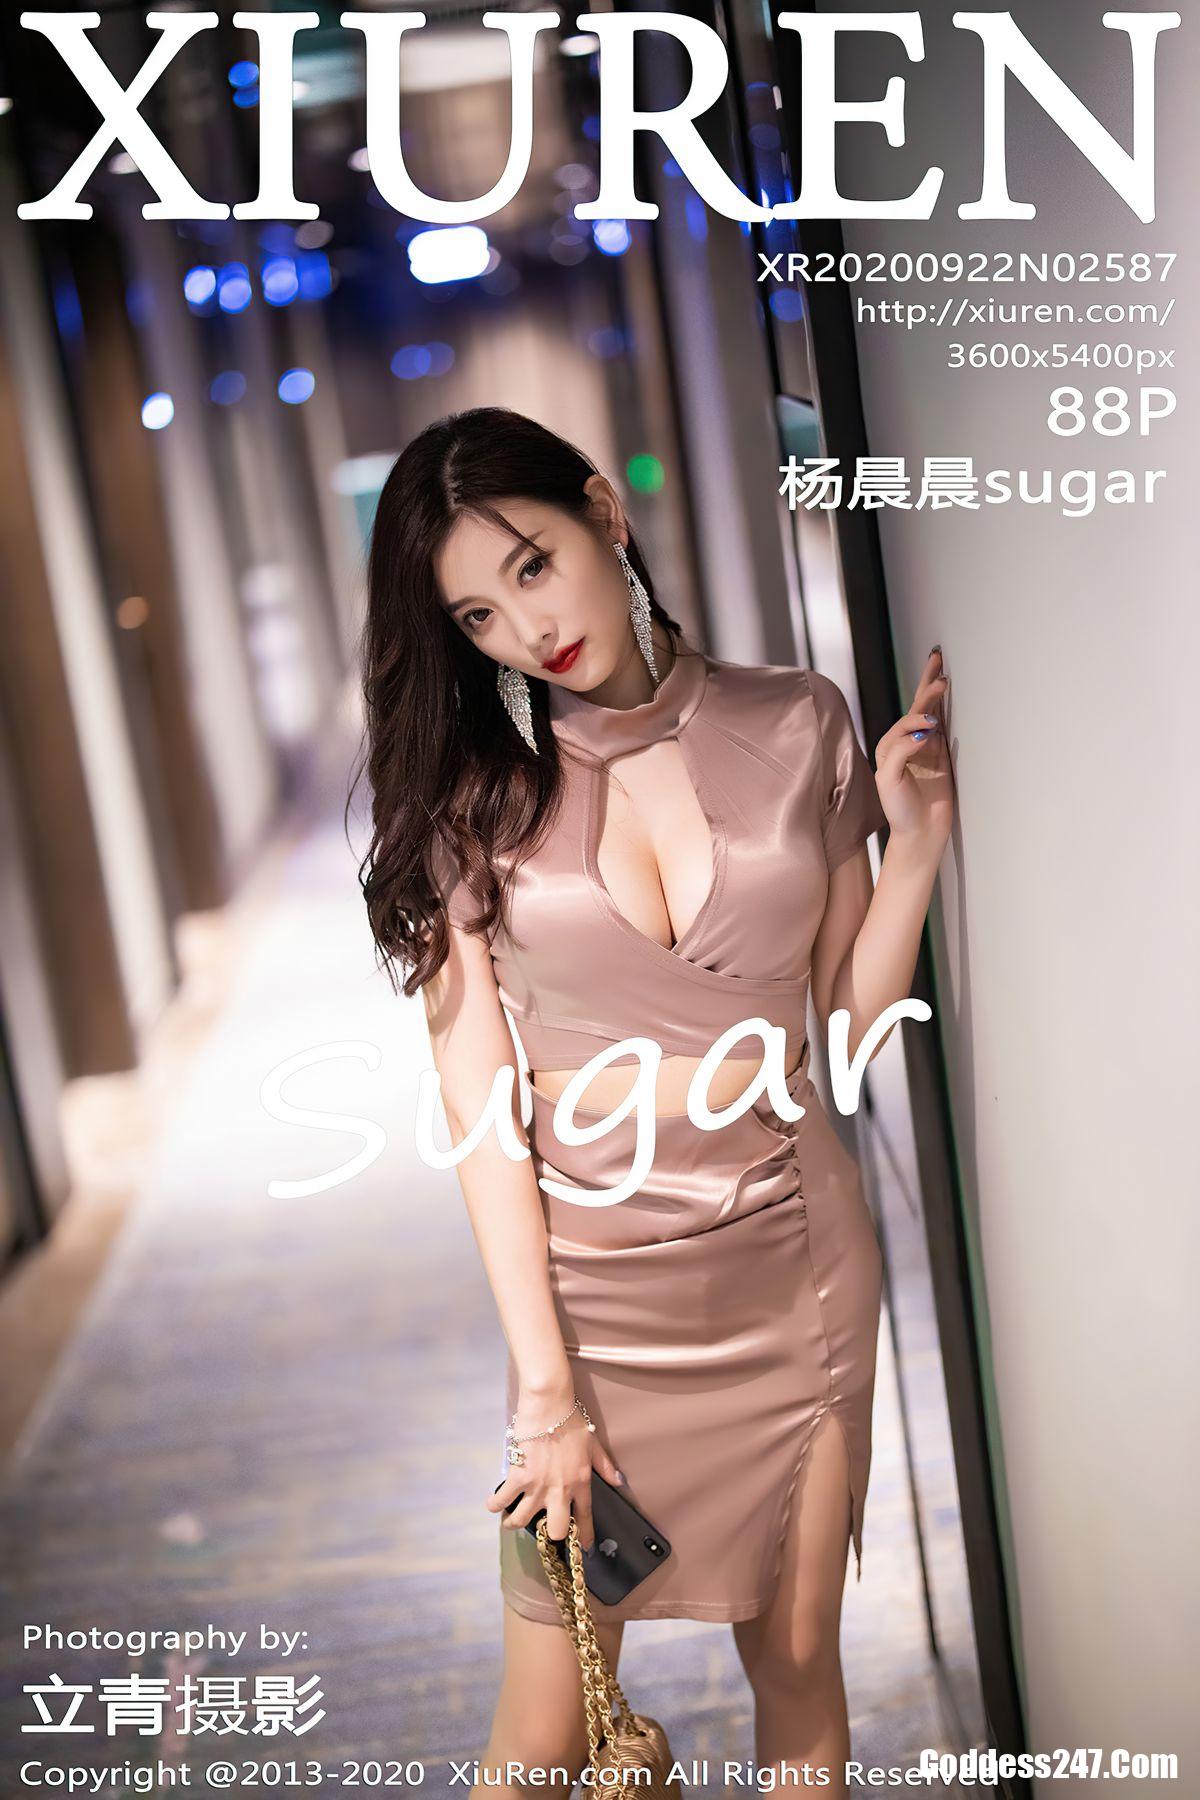 XiuRen秀人网 Vol.2587 杨晨晨sugar